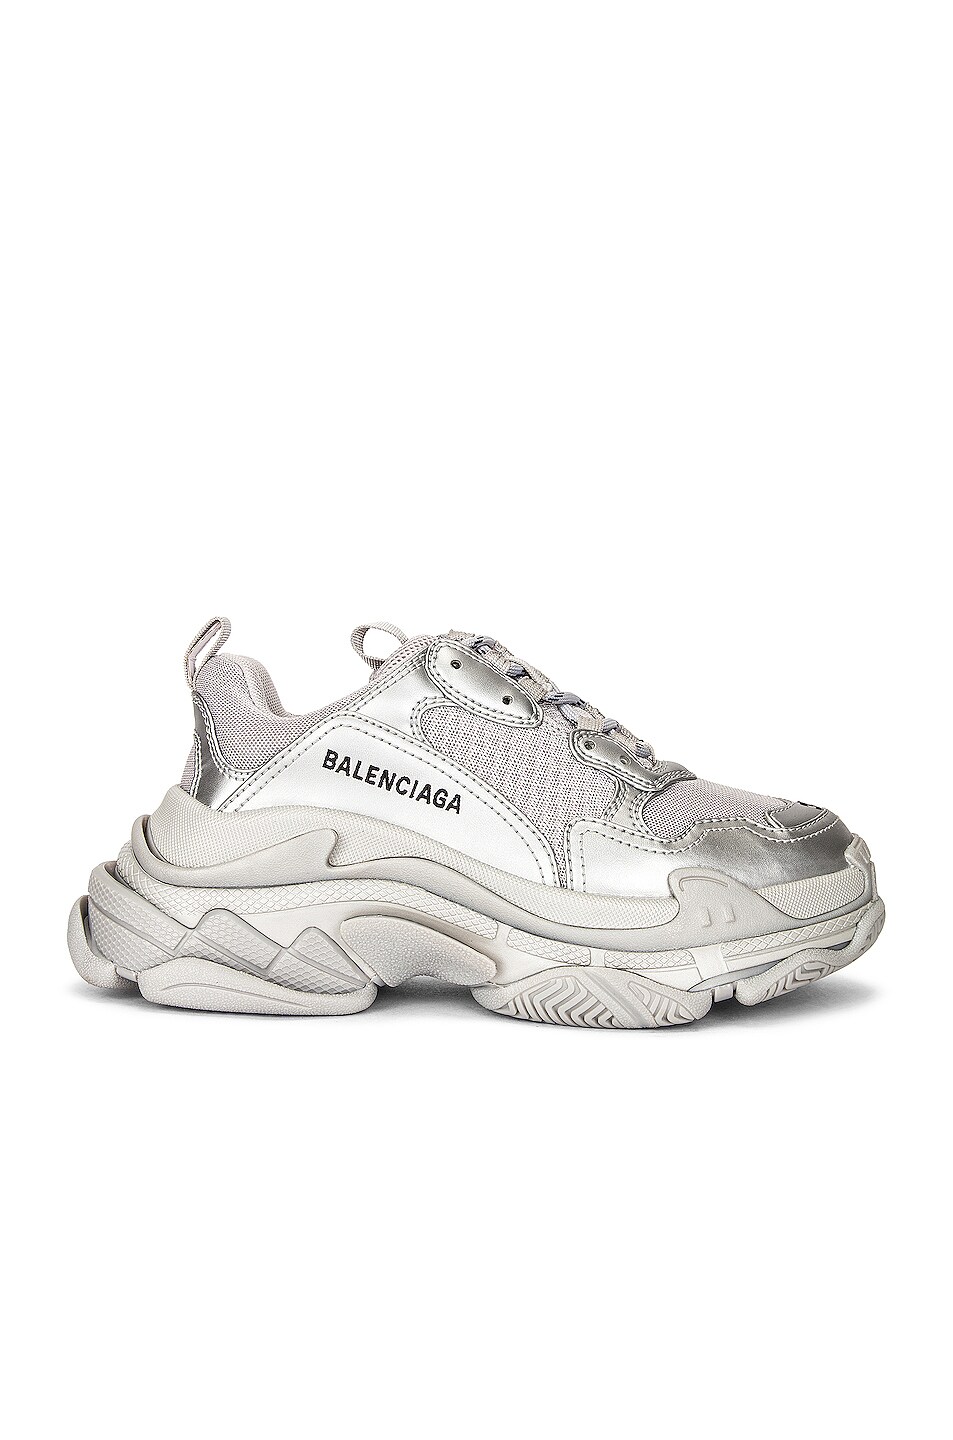 Image 1 of Balenciaga Triple S Sneakers in Silver Metallic